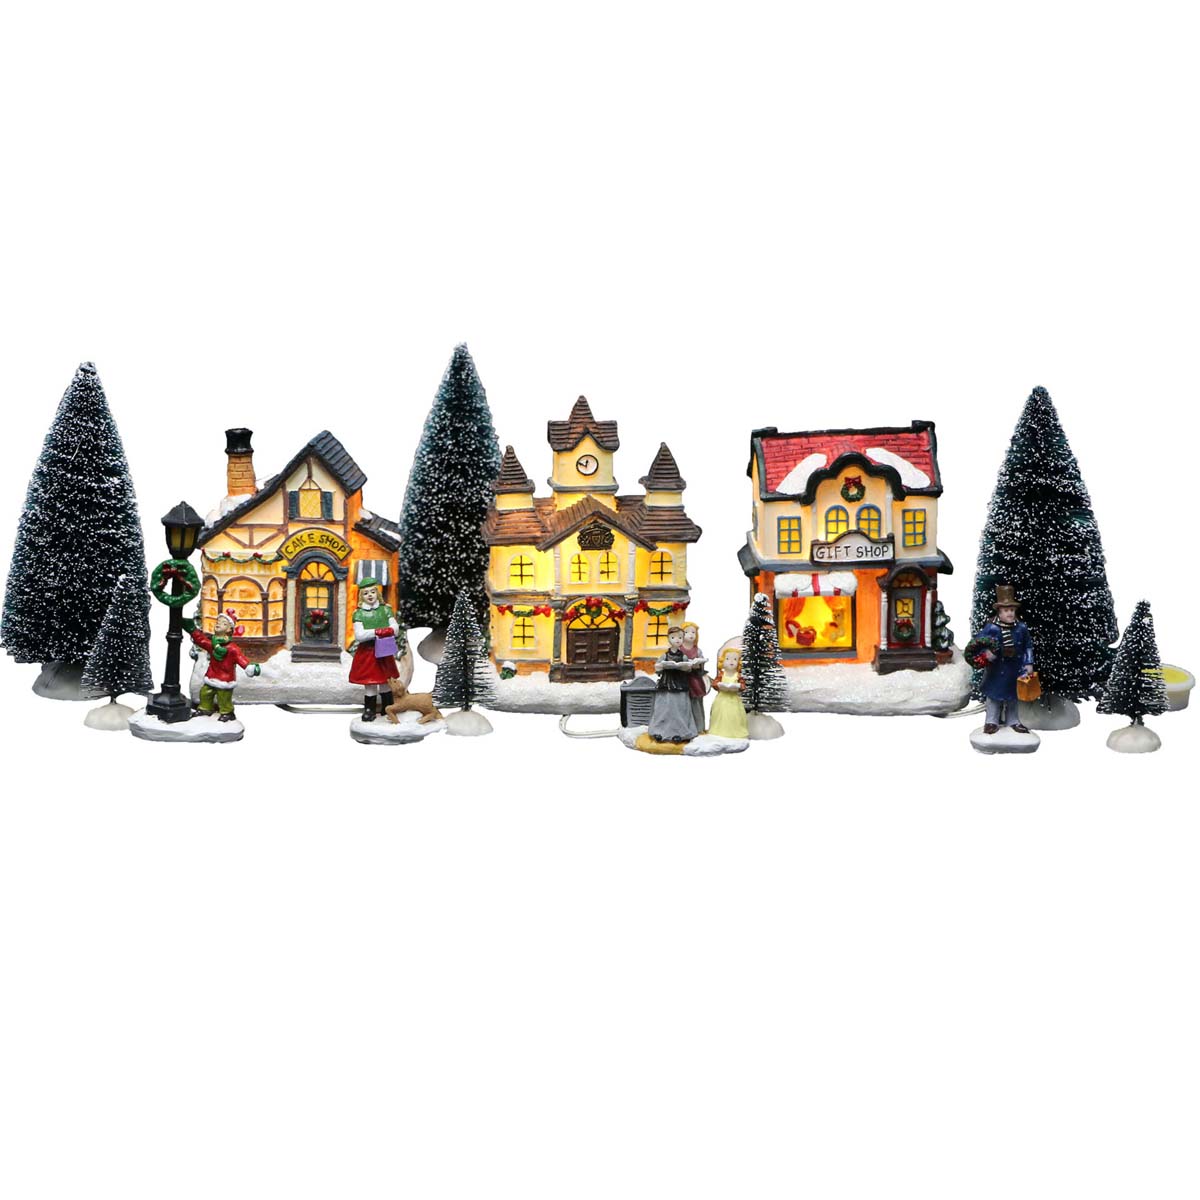 Villaggi di Natale – I personaggi del villaggio 14 soggetti